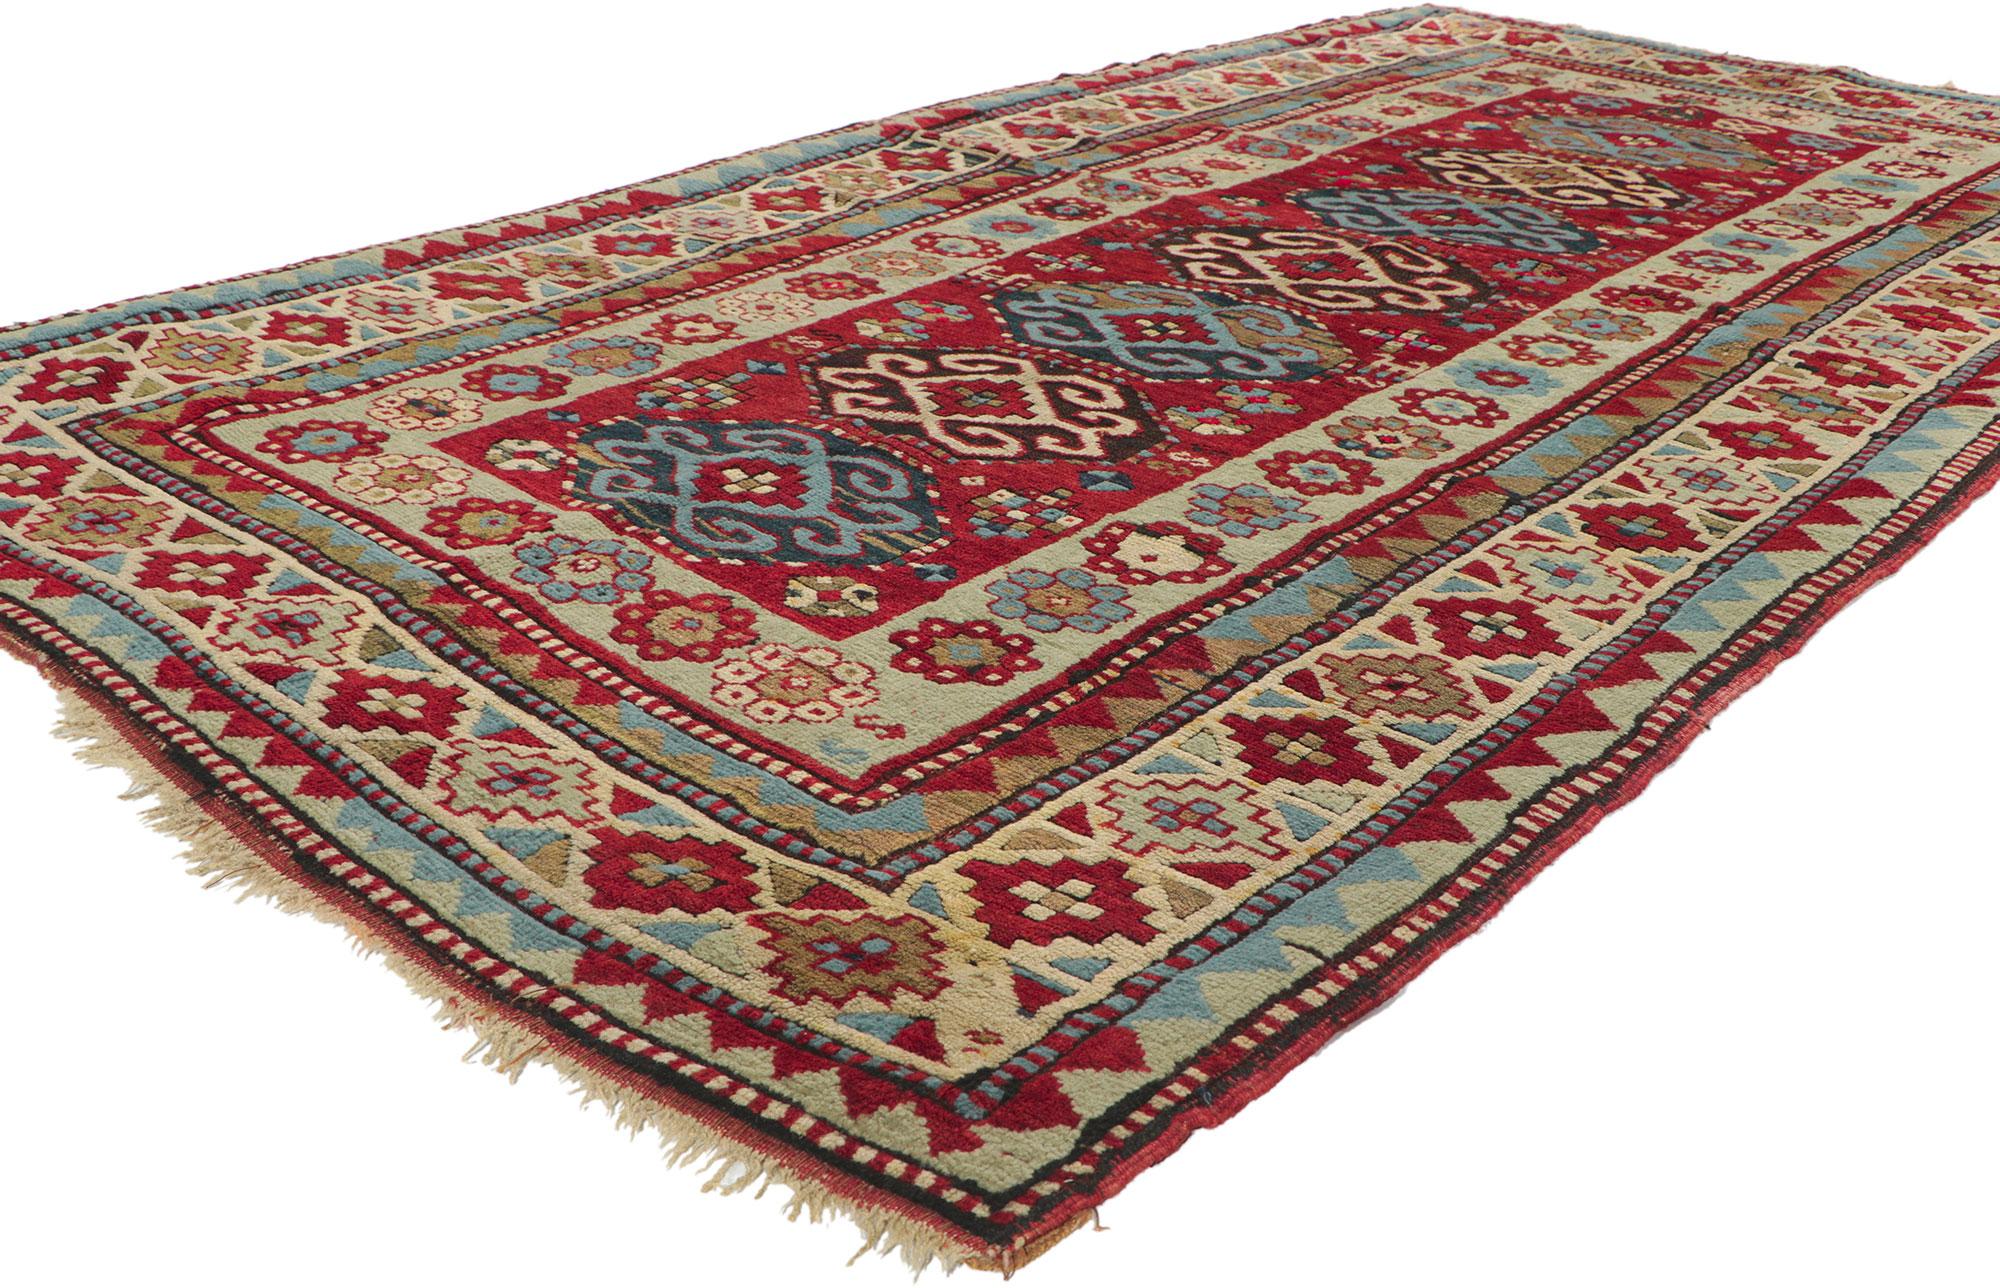 74292 Antiker russischer kaukasischer Kazak-Teppich, 04'04 X 08'06.
Dieser antike kaukasische Kazak-Teppich aus handgeknüpfter Wolle basiert auf traditionellen Mustern aus dem Kaukasus und zeigt sieben achteckige Medaillons, die mit